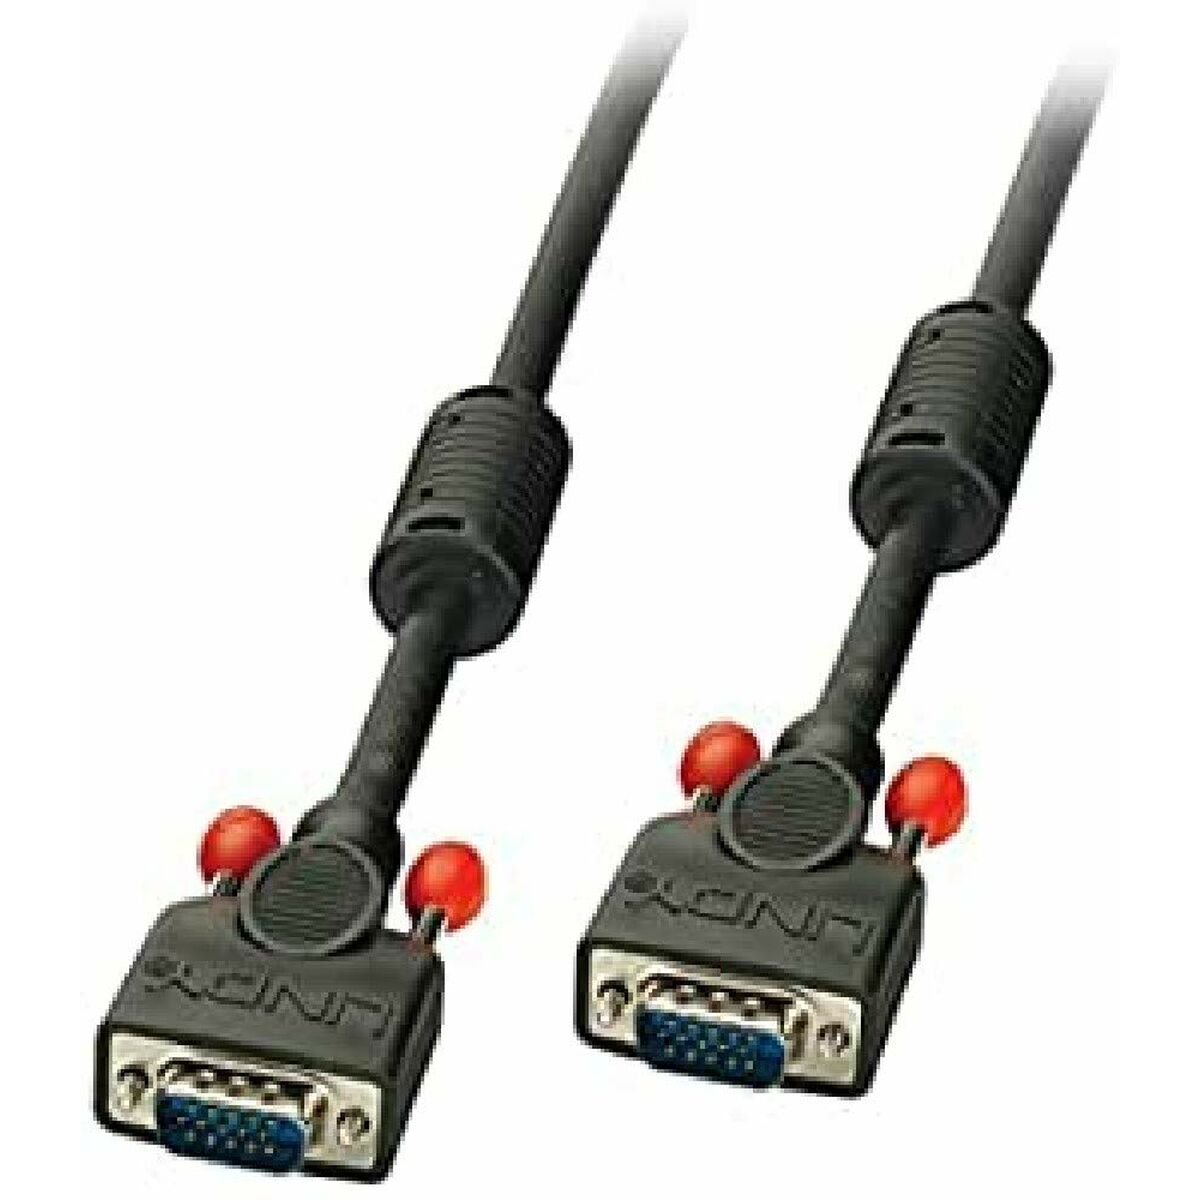 Osta tuote VGA-kaapeli LINDY 36375 Musta 5 m verkkokaupastamme Korhone: Koti & Puutarha 10% alennuksella koodilla KORHONE